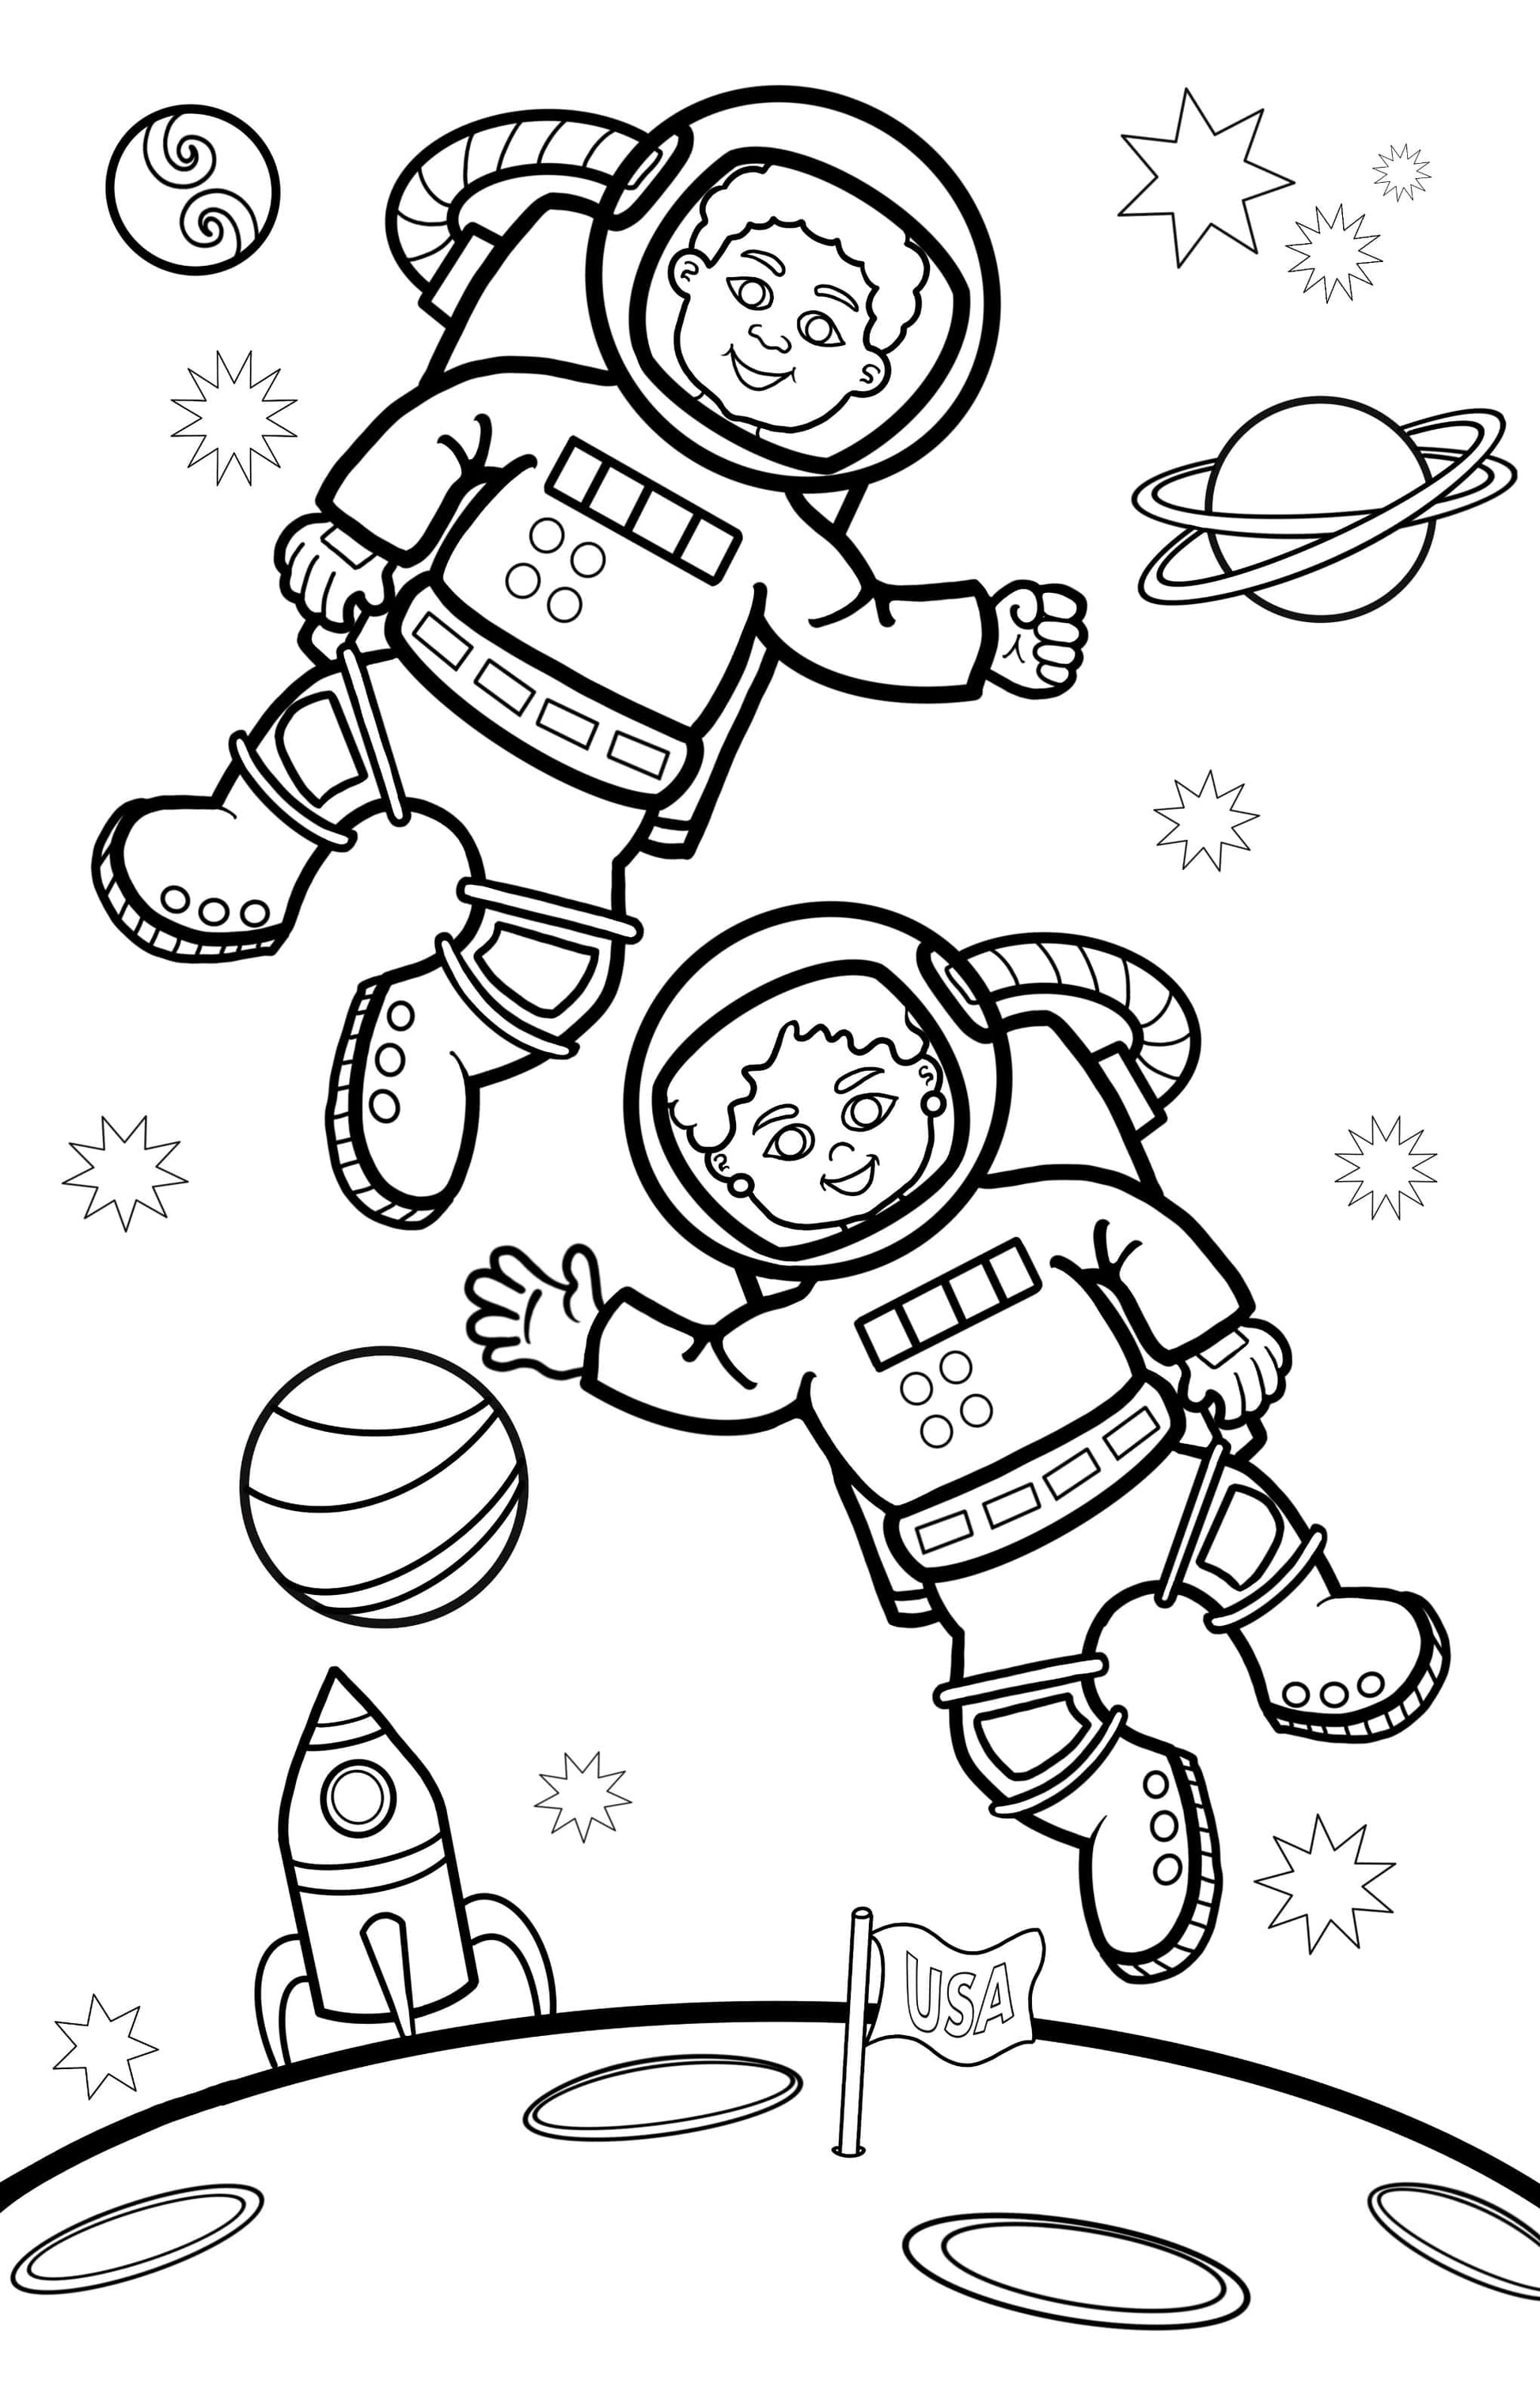 Kids in space coloring page digital download â jadens freedom art